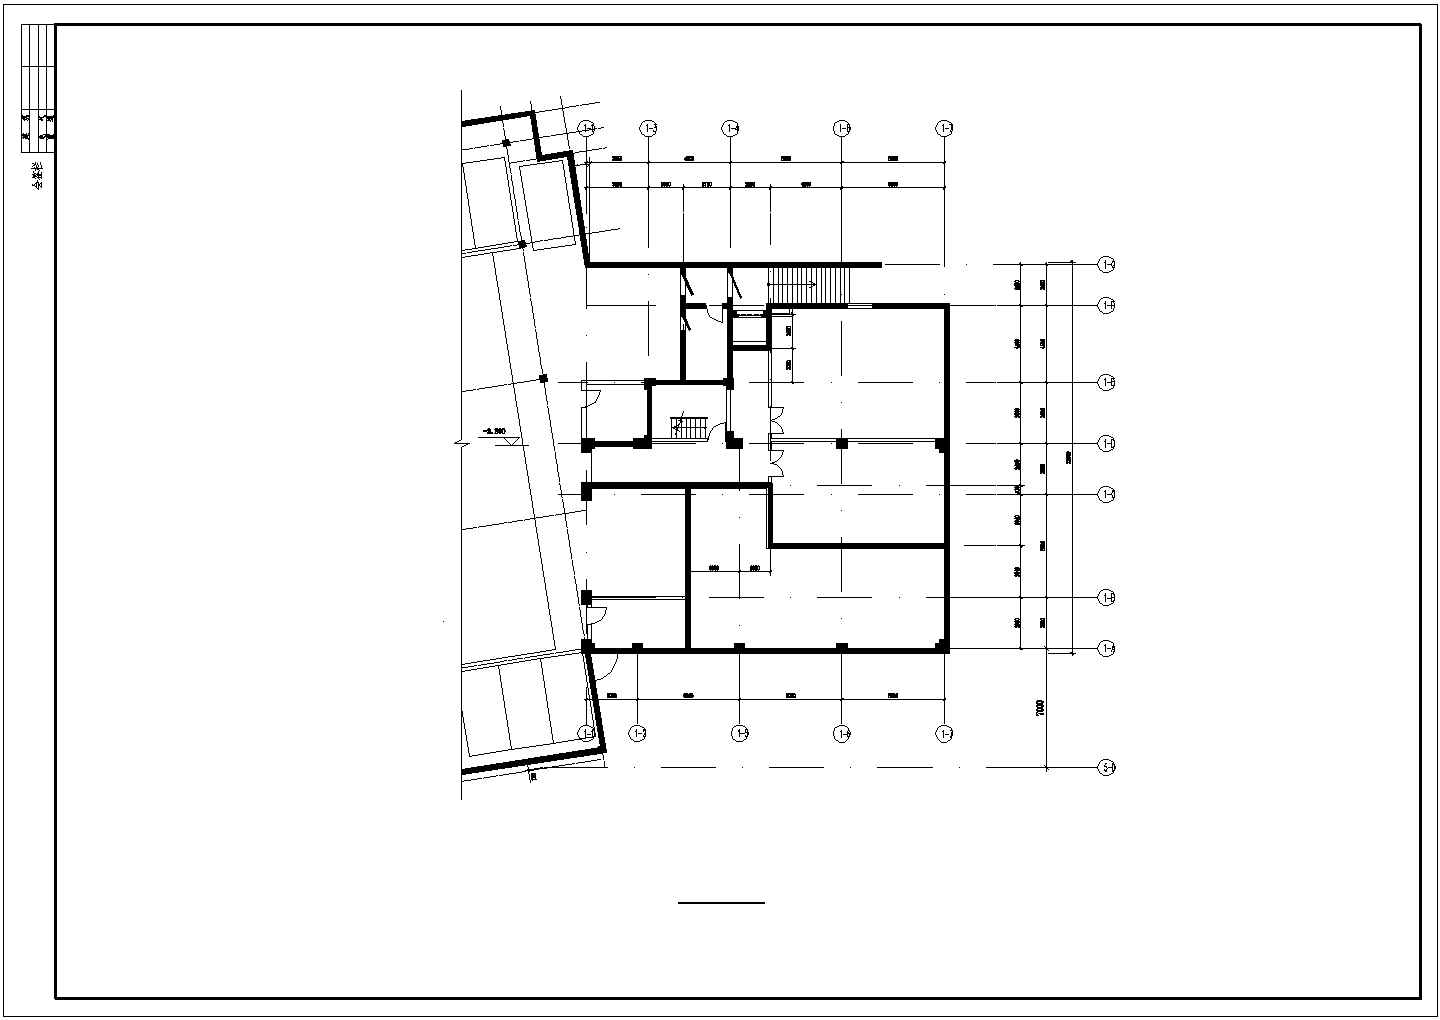 英伦建筑风格教堂全套装修设计cad施工图纸(含教堂地下室平面图)